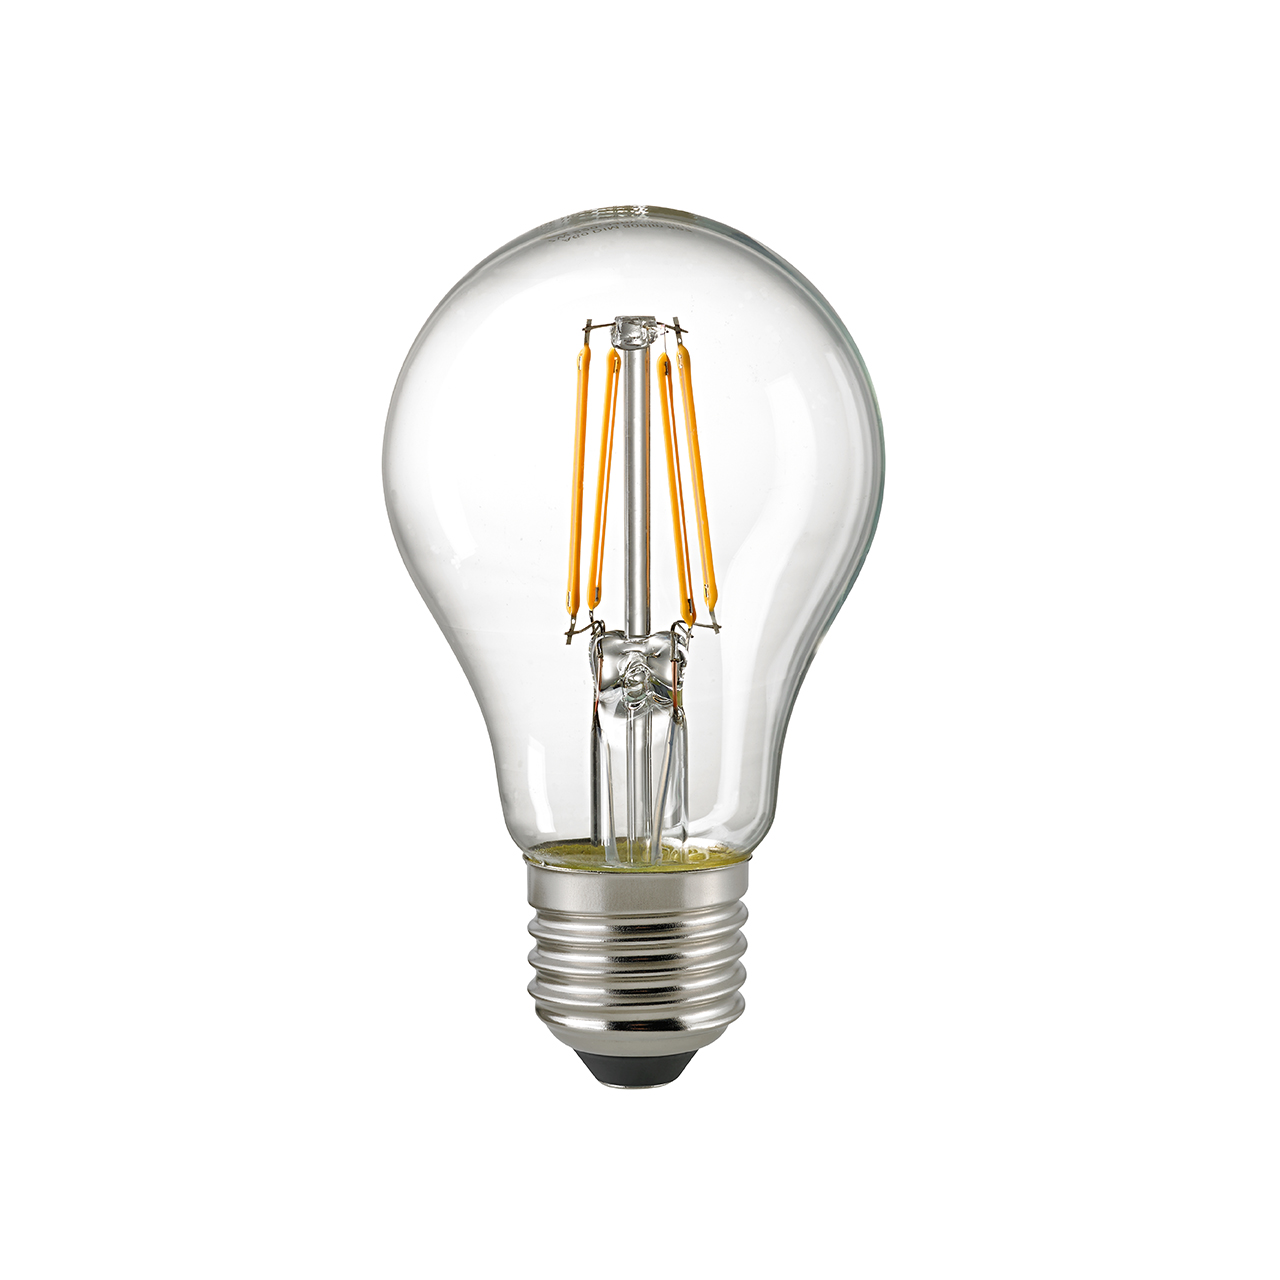 LED Leuchten & Lampen online kaufen bei LED-Lichtraum